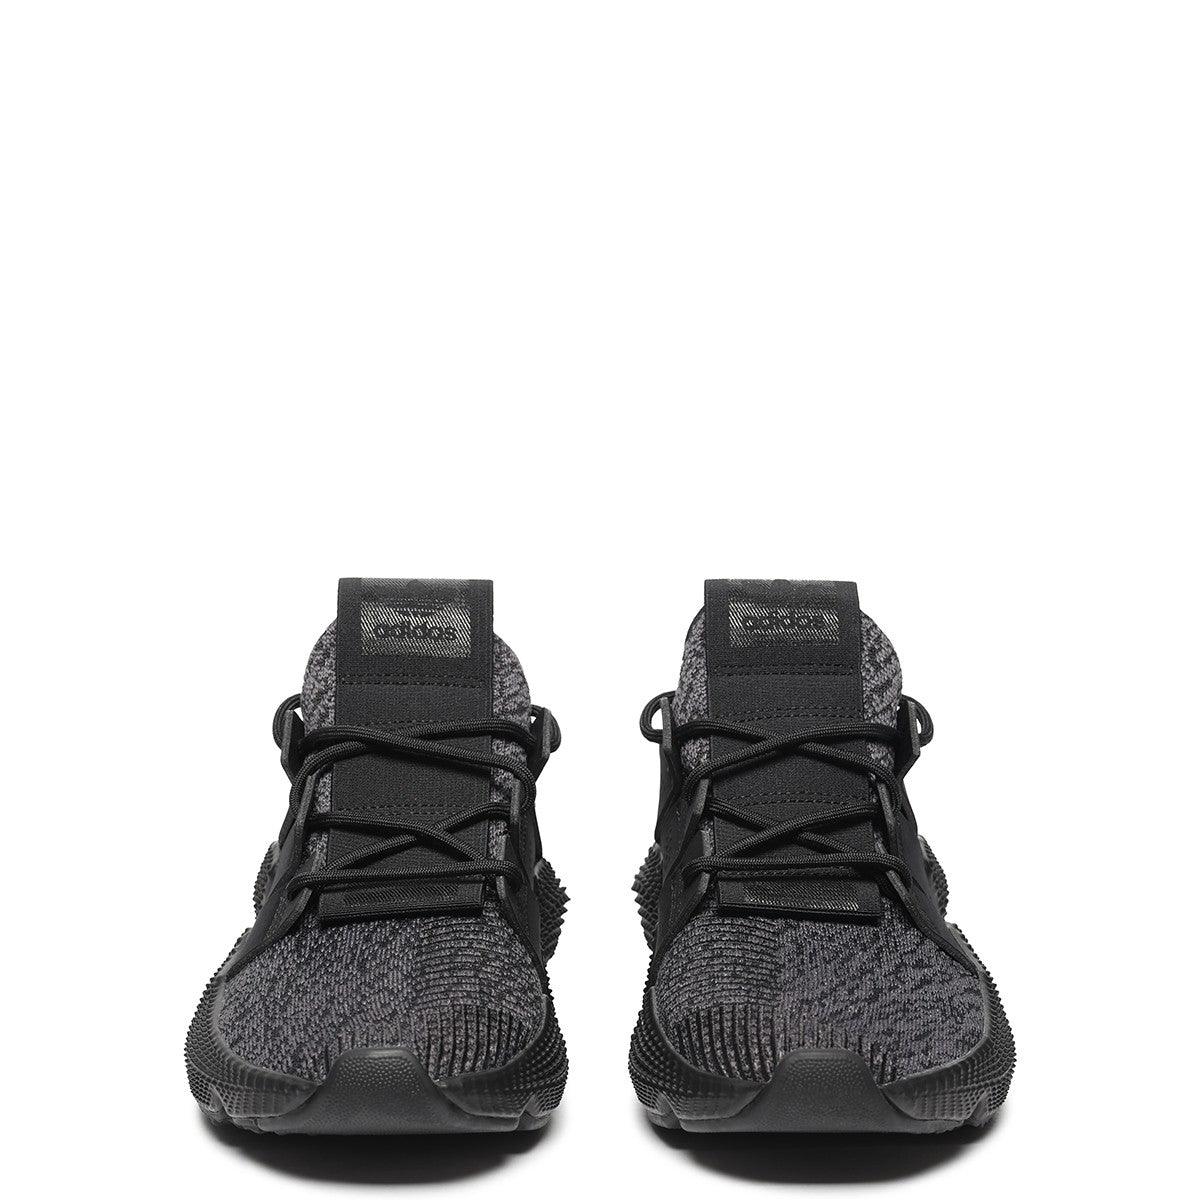 Adidas Prophere triple black shoes - Obeezi.com